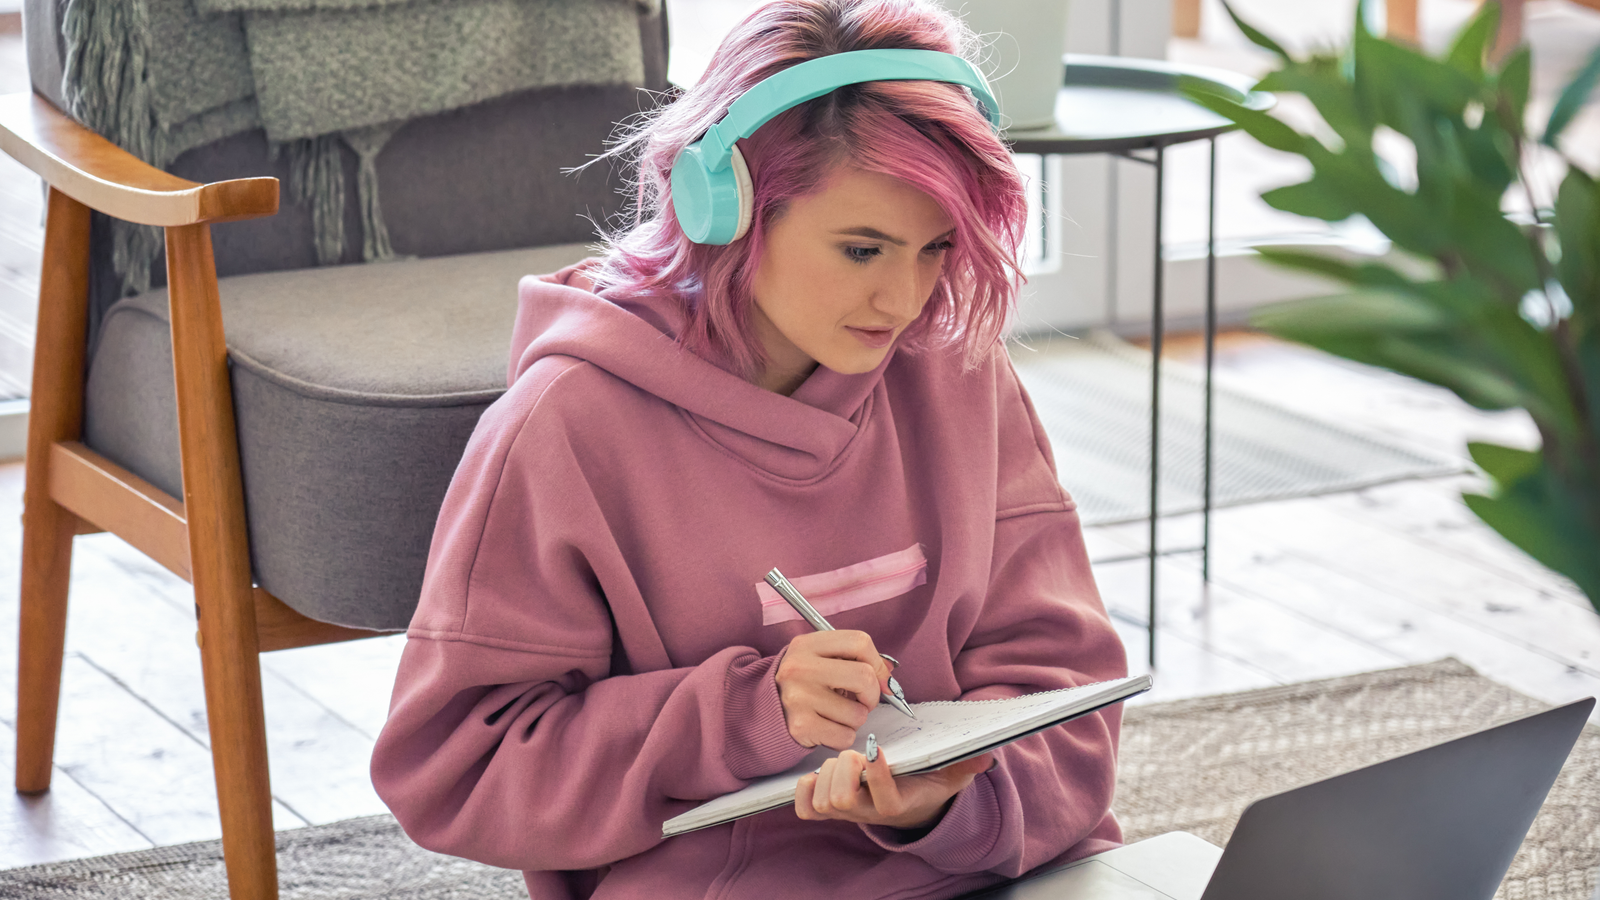 Người tuổi đại học với mái tóc hồng đeo tai nghe và ghi chú khi xem video trên máy tính xách tay